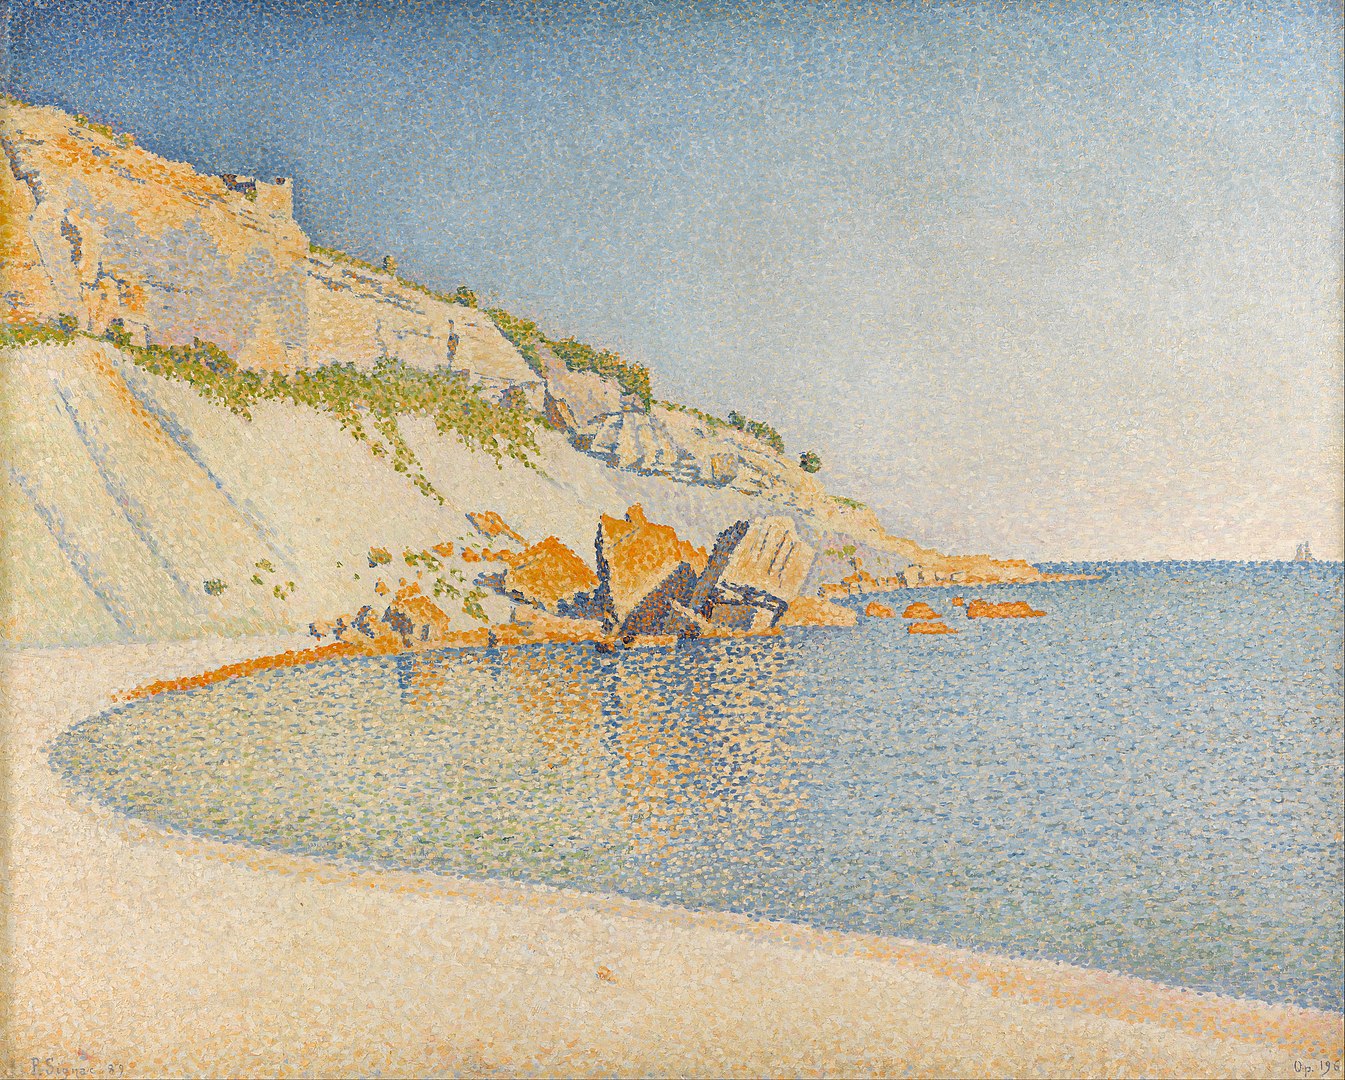 カシ、ロンバルド岬、作品番号196 by Paul Signac - 1889年4月～6月 - 66 x 81 cm 